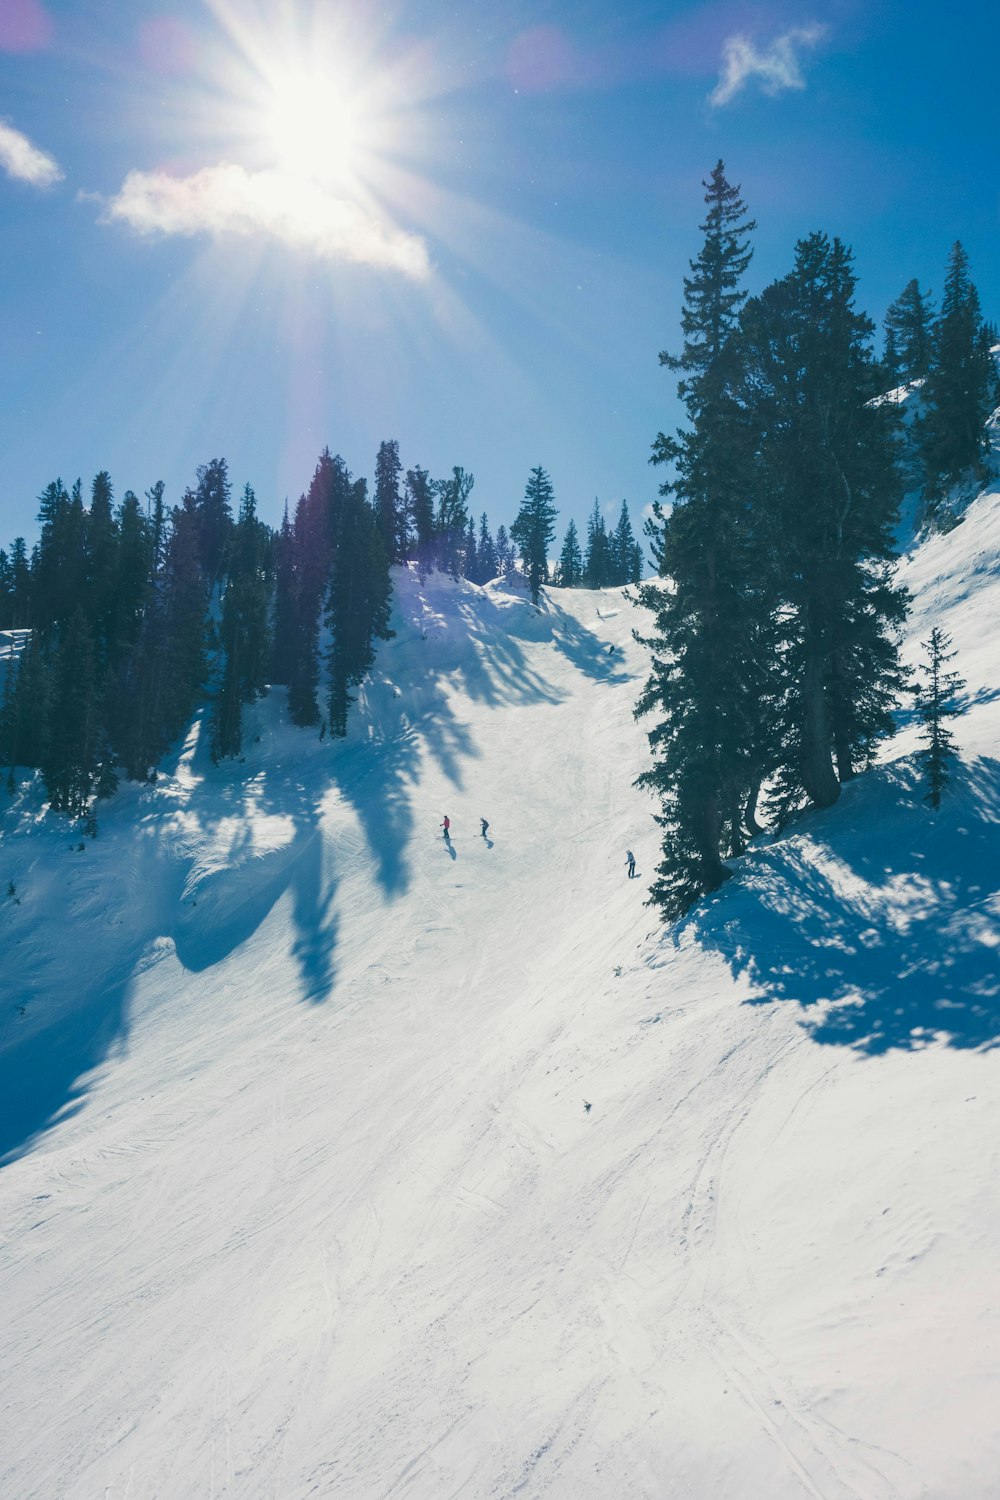 Un gruppo di persone che cavalcano gli sci lungo un pendio innevato